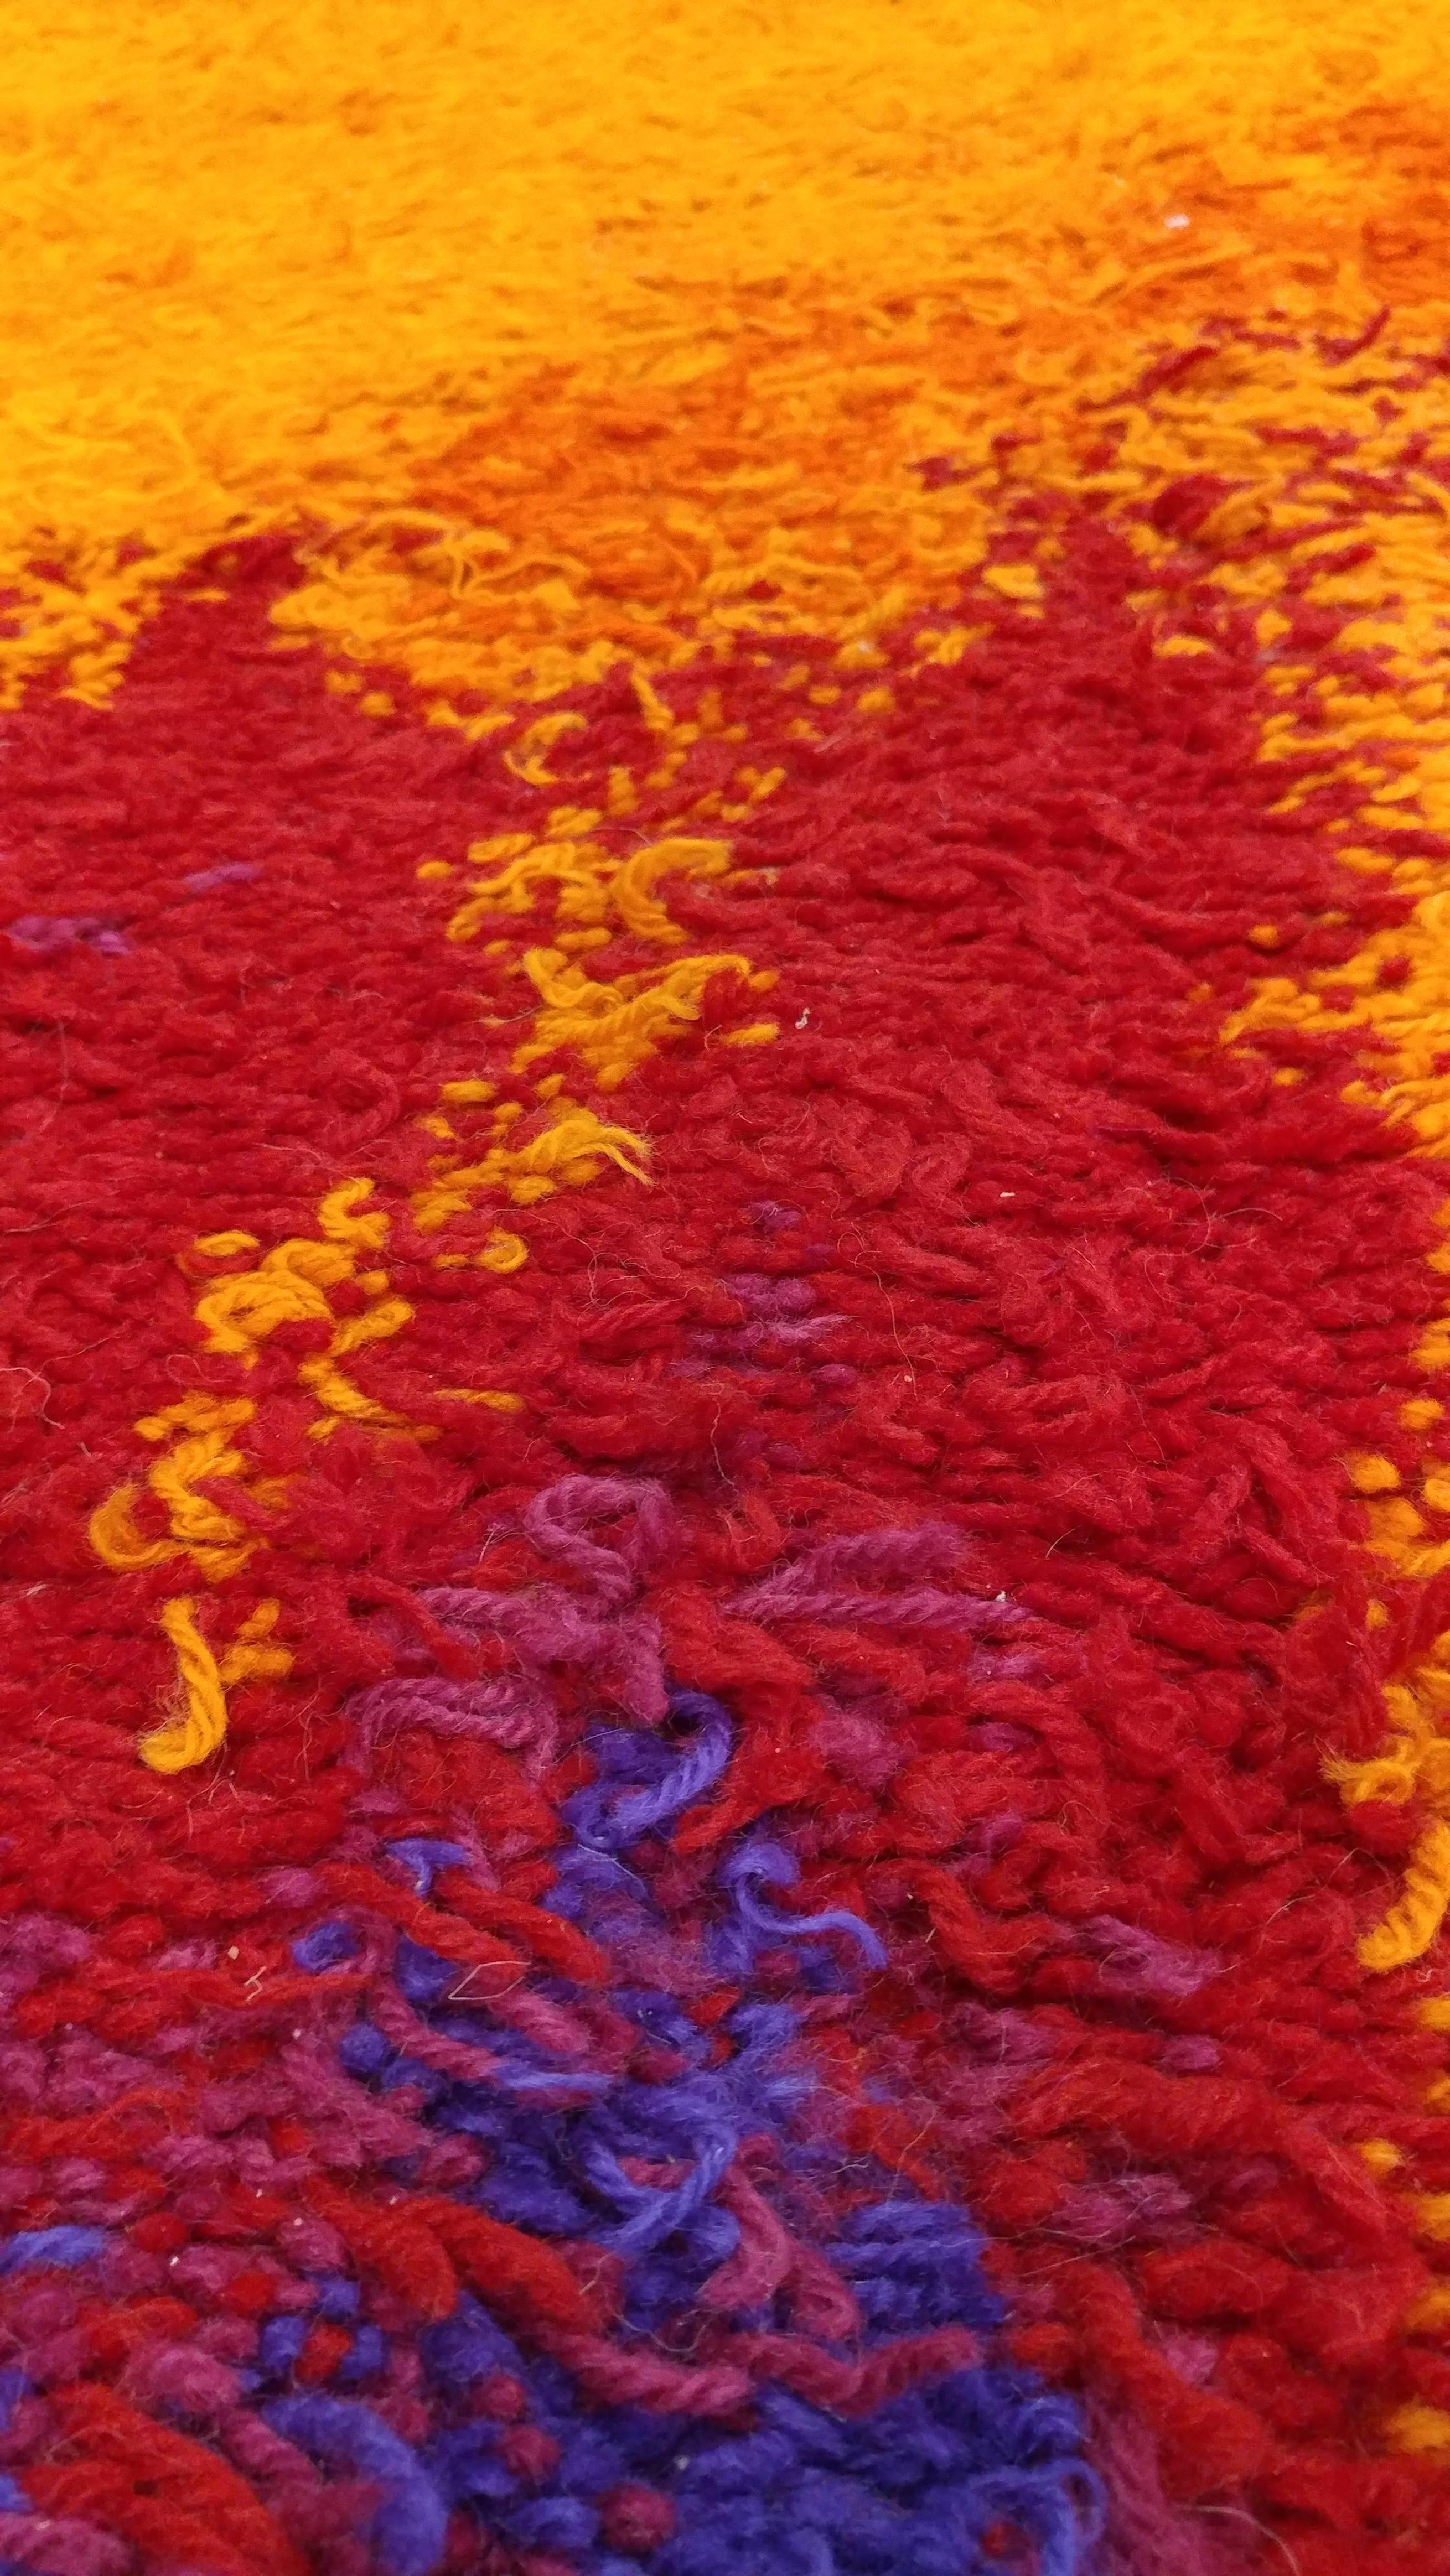 schwedischer Rya-Teppich aus den 1960er Jahren mit einem farbenfrohen, plüschigen Wollflor. Größe: 4'6